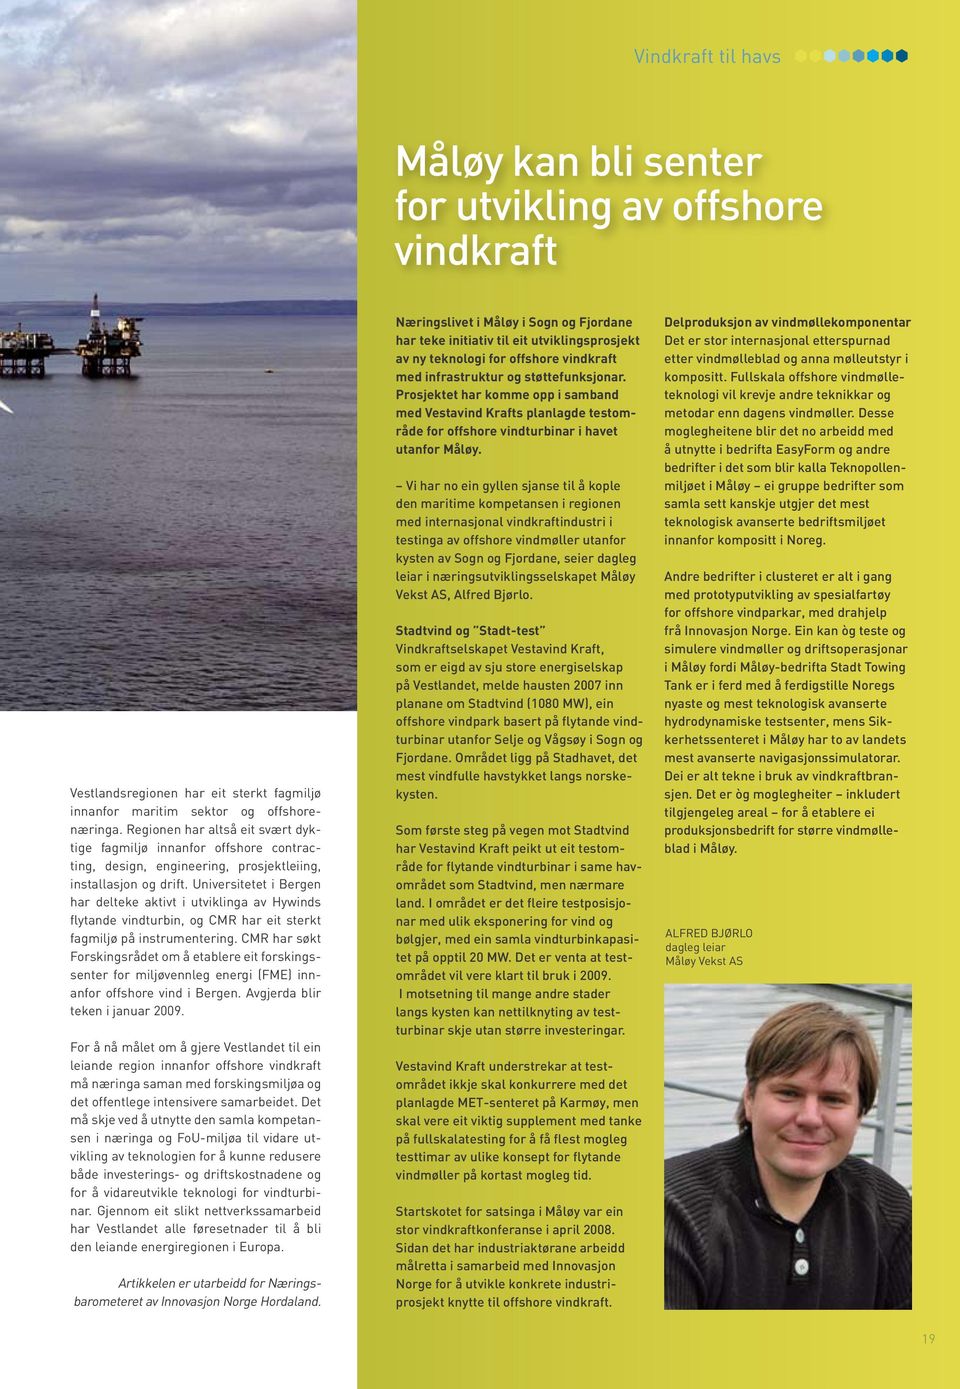 Universitetet i Bergen har delteke aktivt i utviklinga av Hywinds flytande vindturbin, og CMR har eit sterkt fagmiljø på instrumentering.